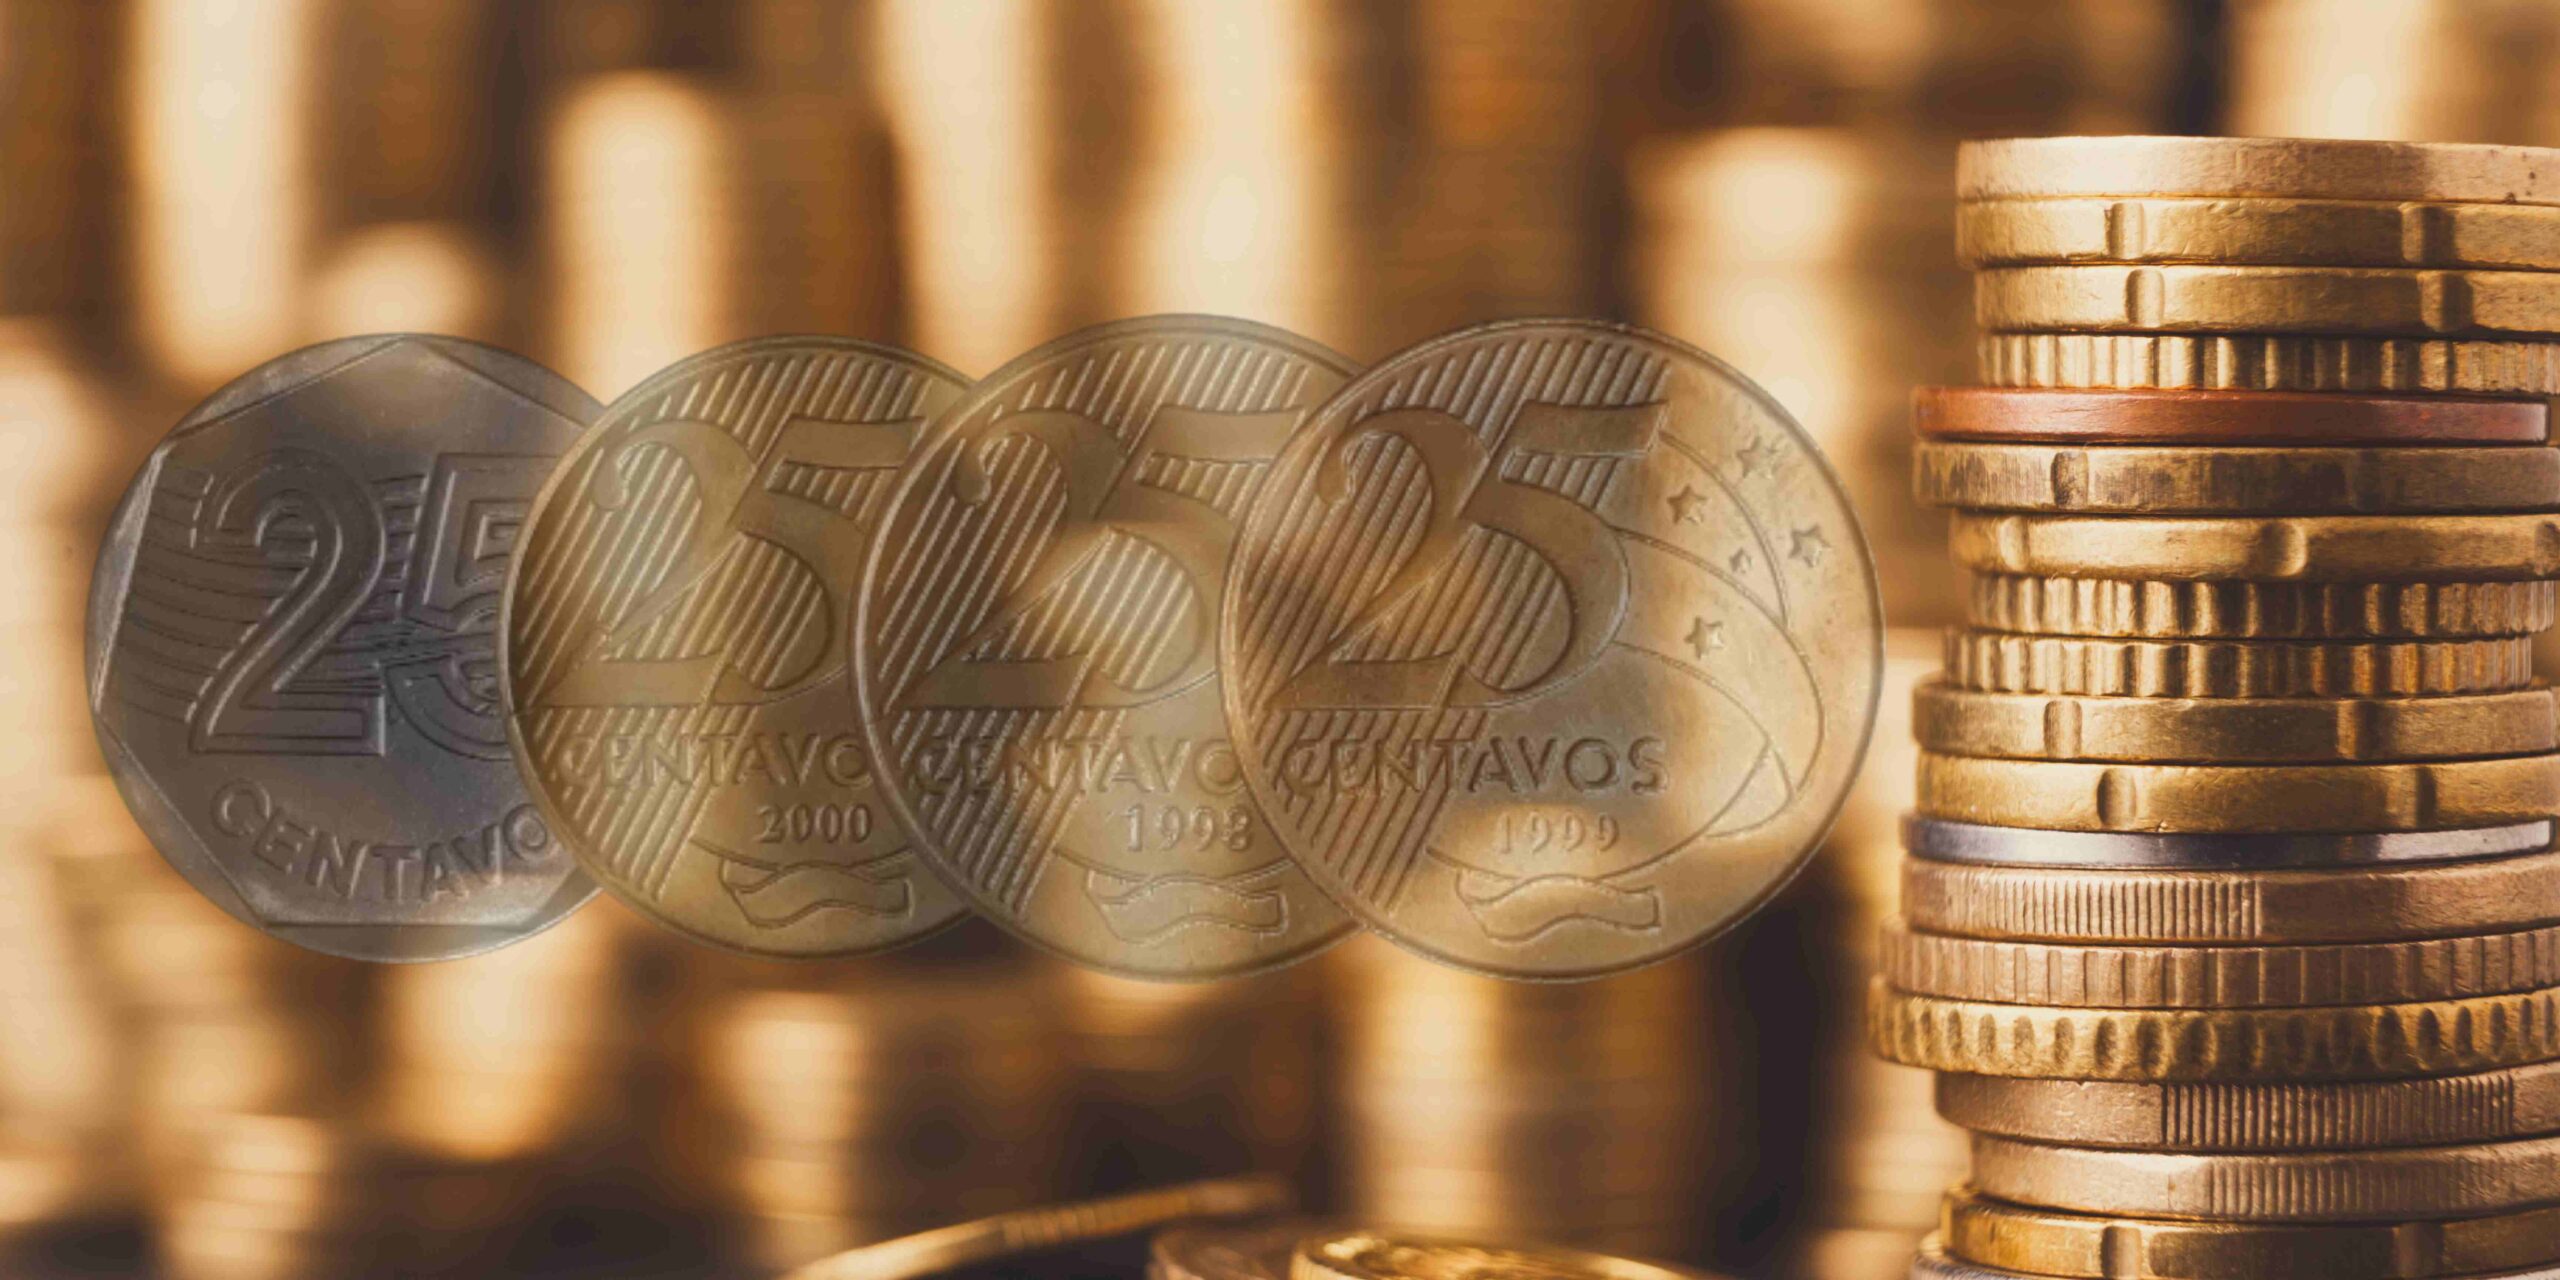 INCRÍVEL! Três modelos de moedas de 25 centavos do mesmo ano podem valer MUITO!